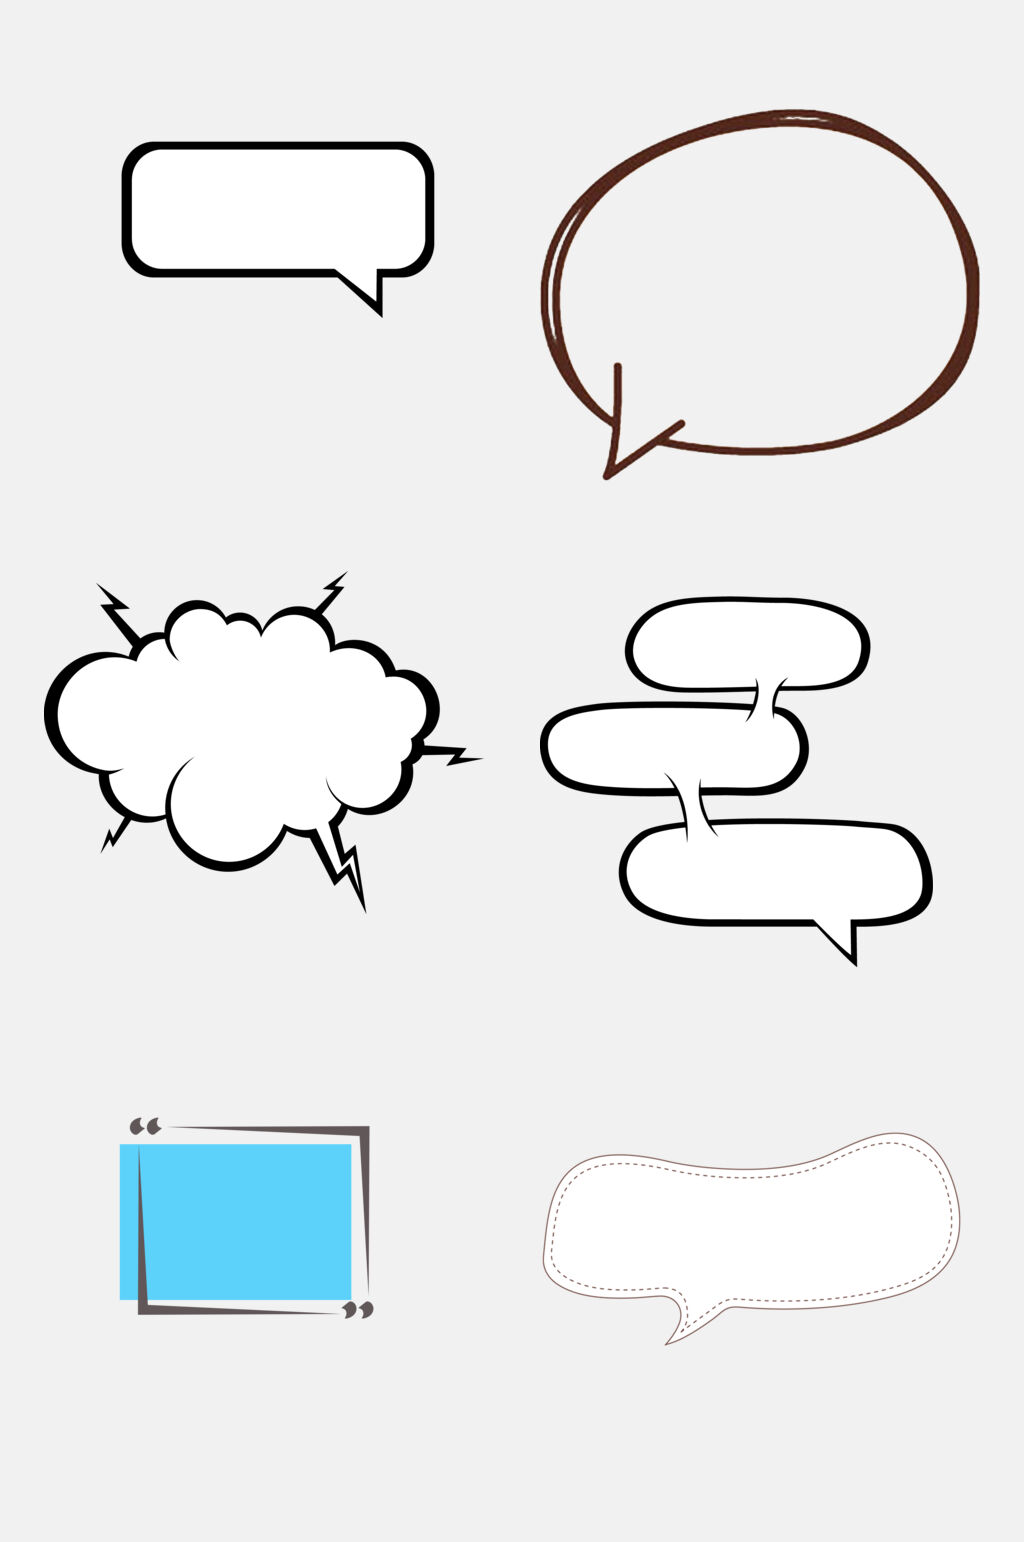 对话框简笔画 彩色图片